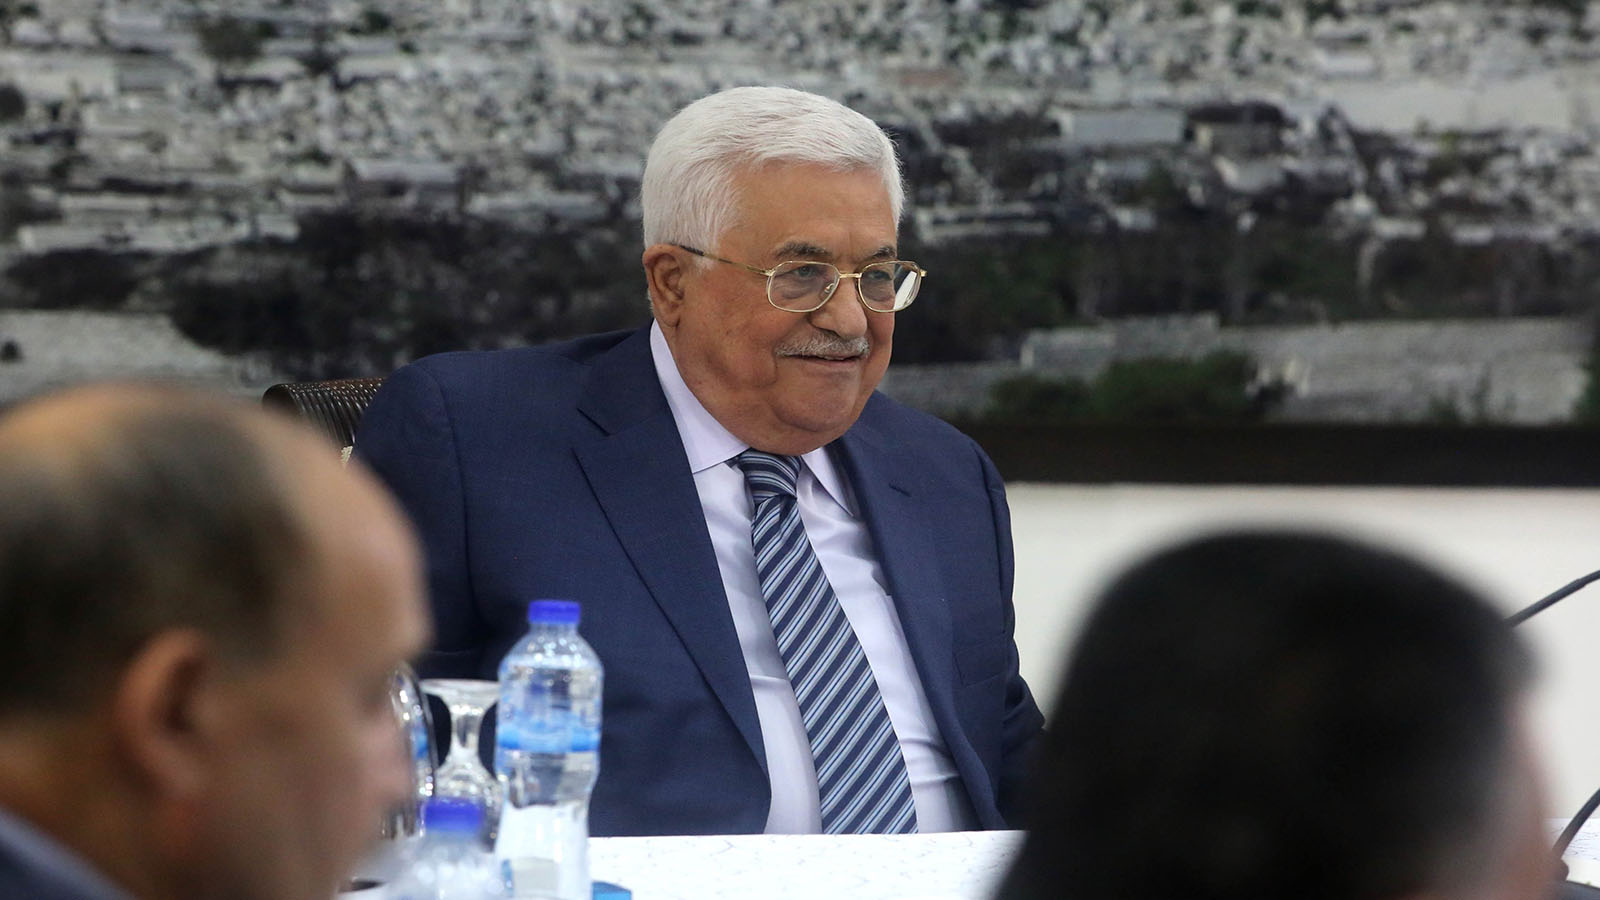 المجلس الوطني الفلسطيني: وجوه جديدة..لمضمون قديم؟